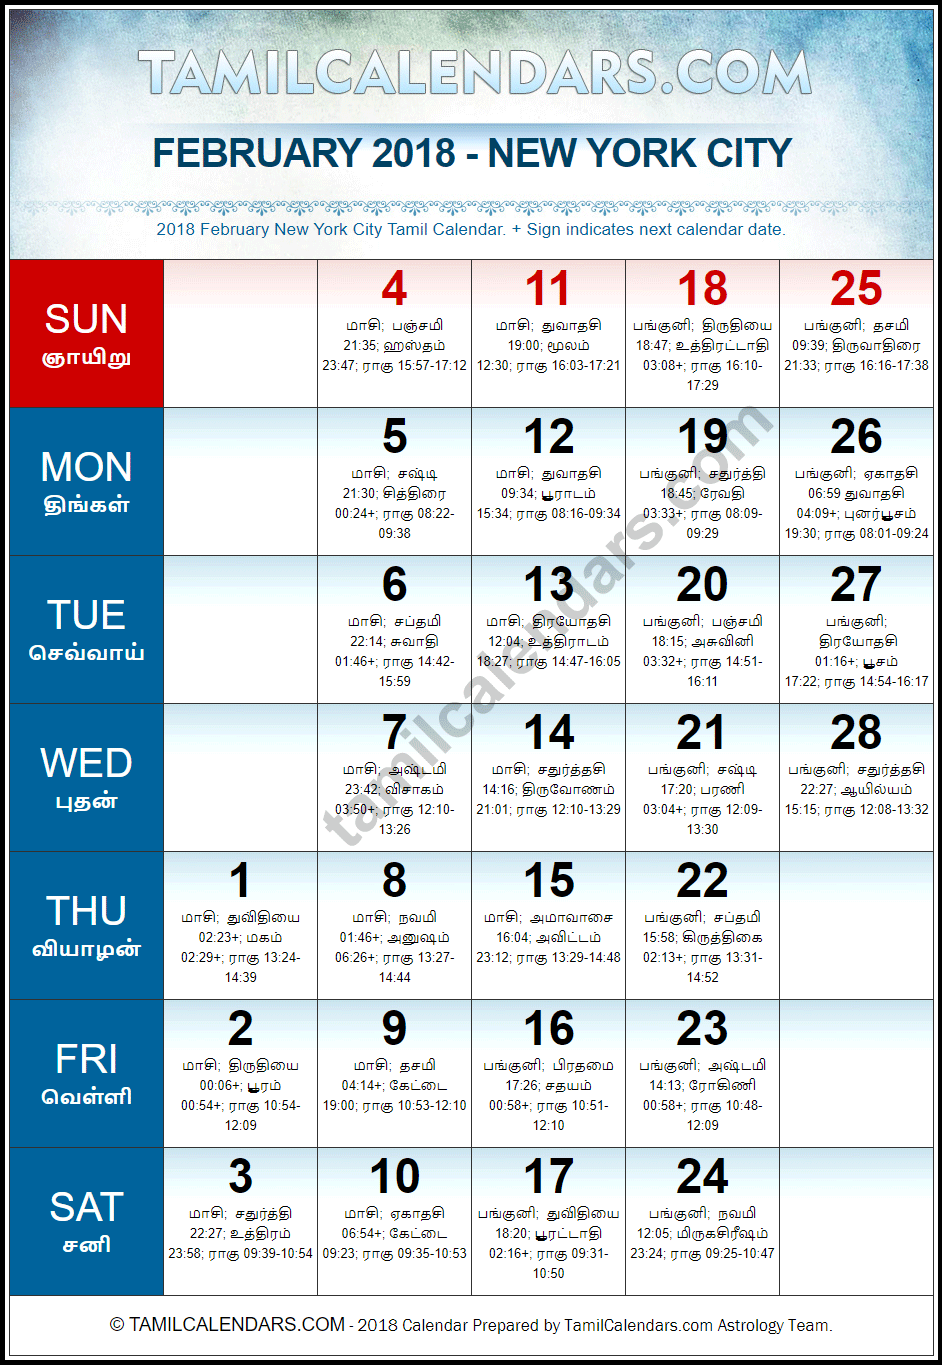 February 2018 Tamil Calendar for New York, USA